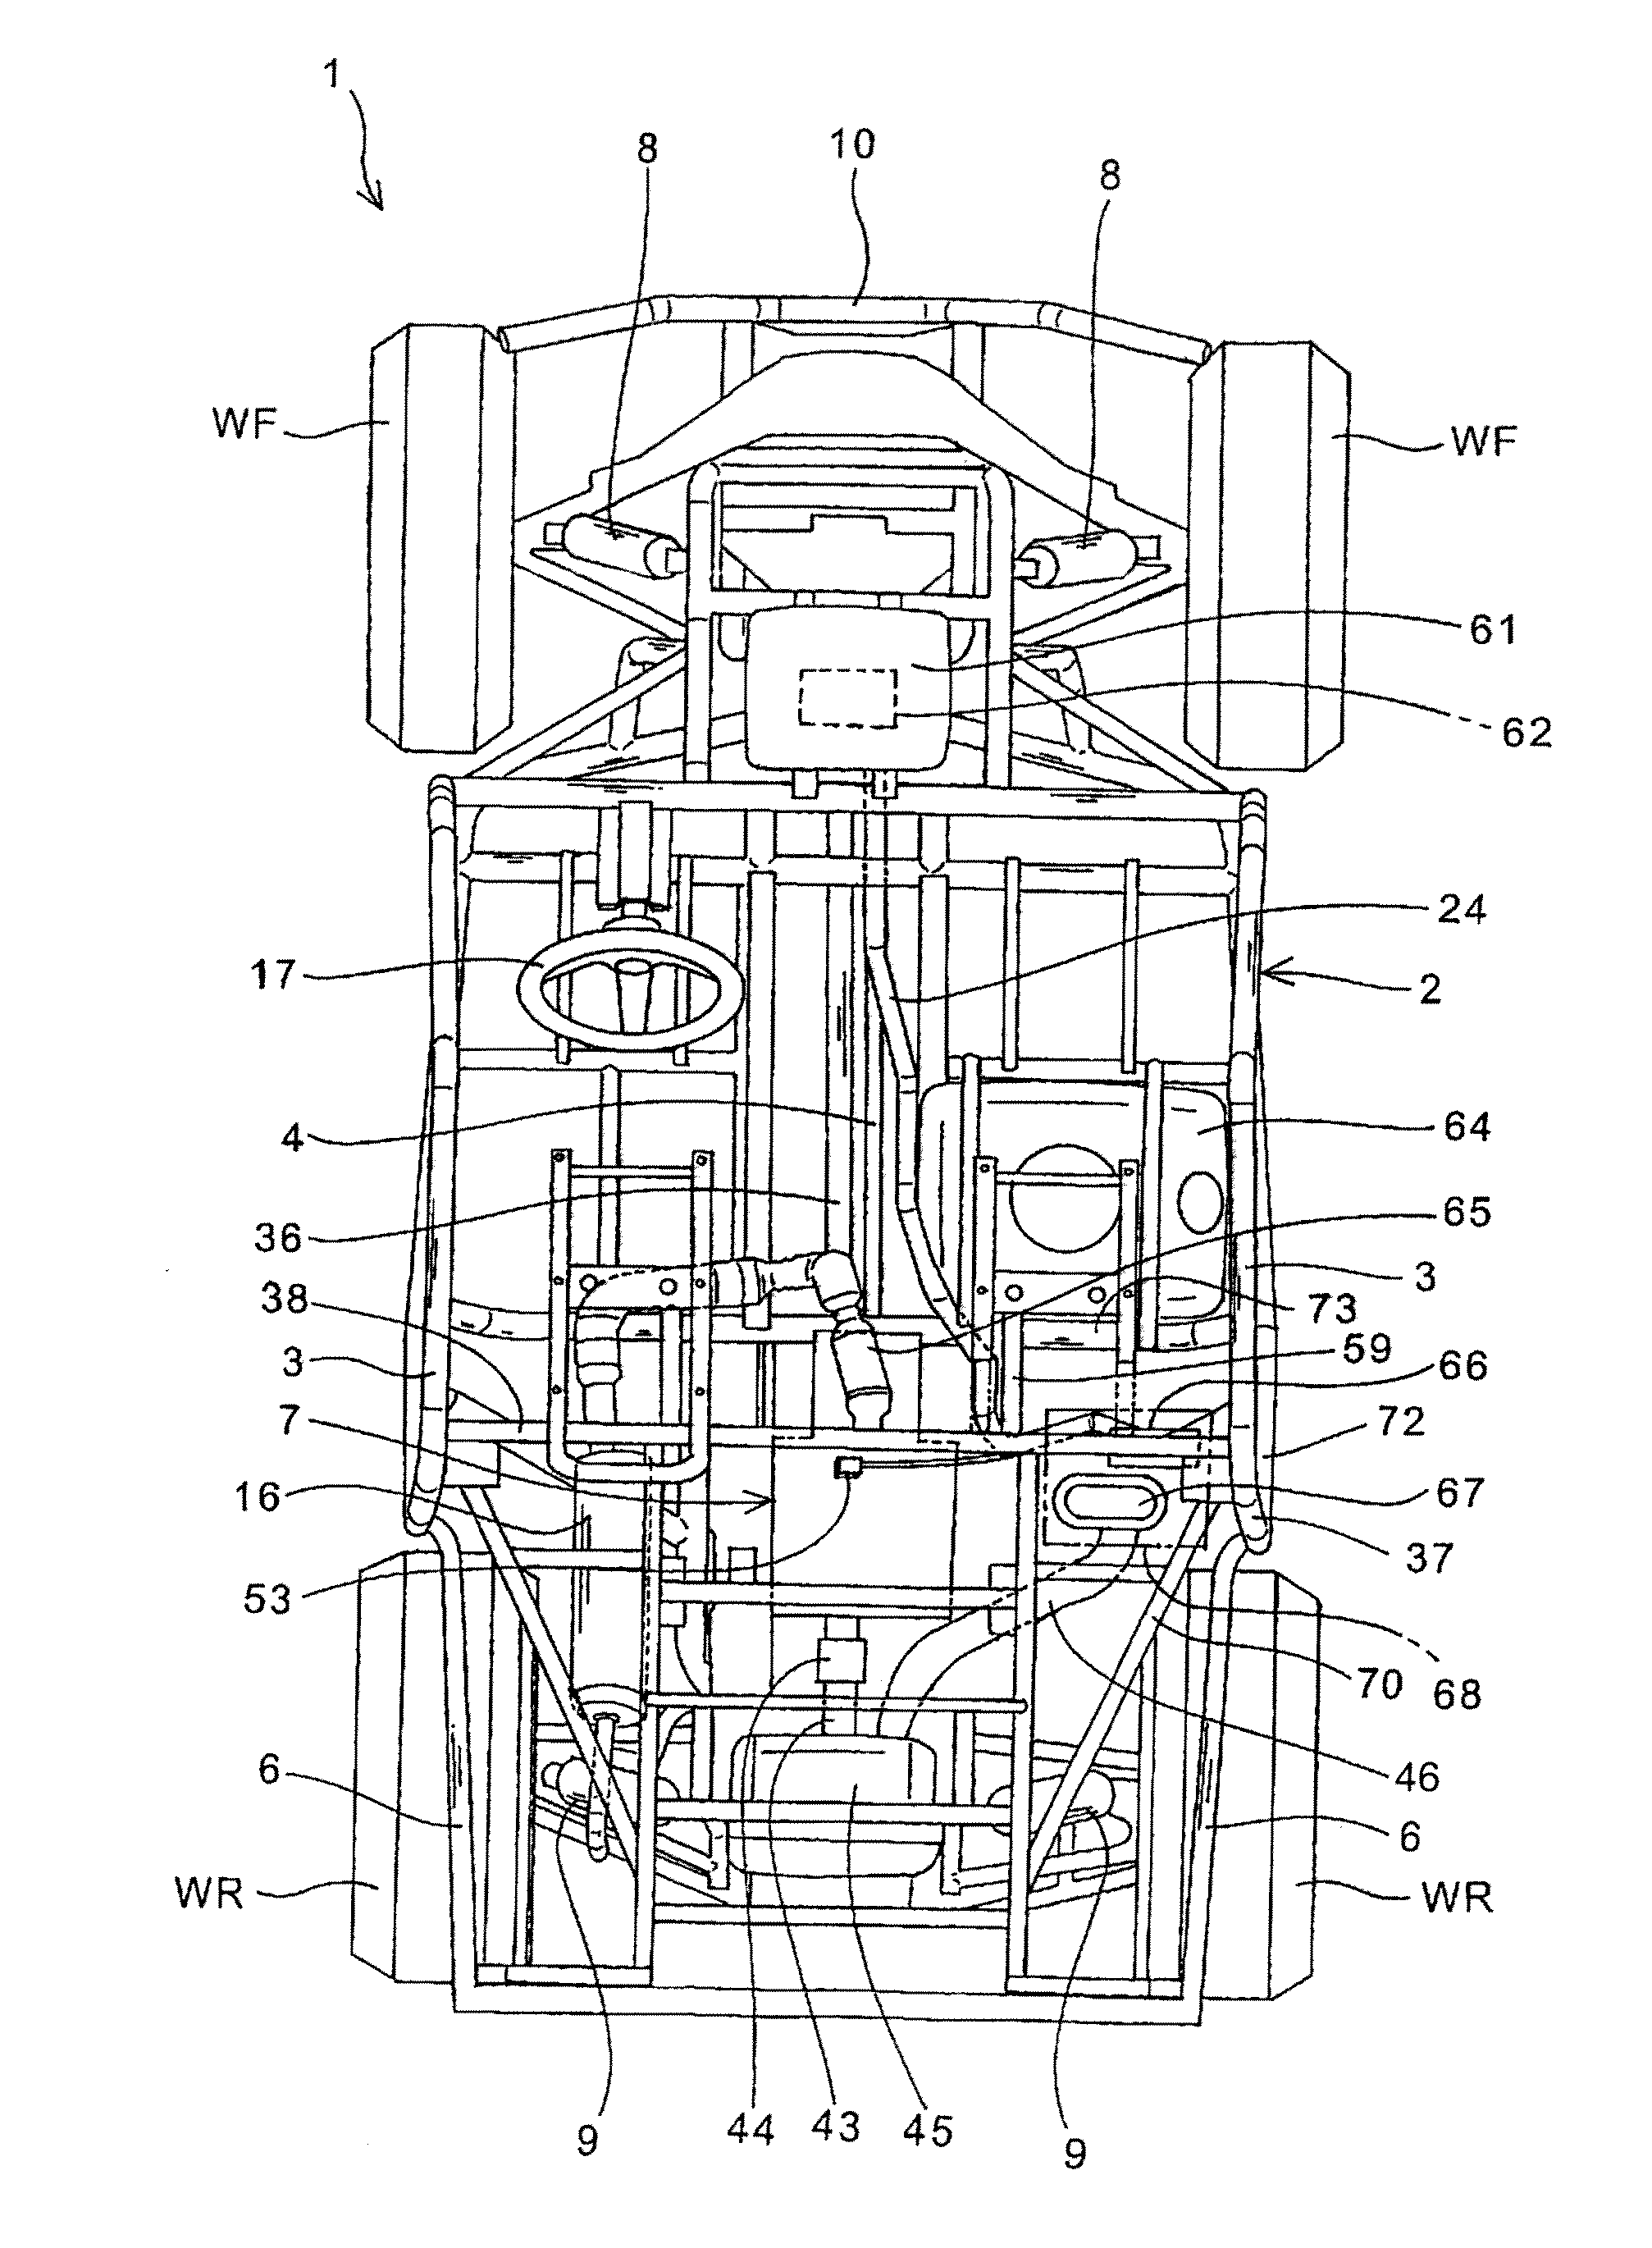 Ecu arrangement structure for a vehicle